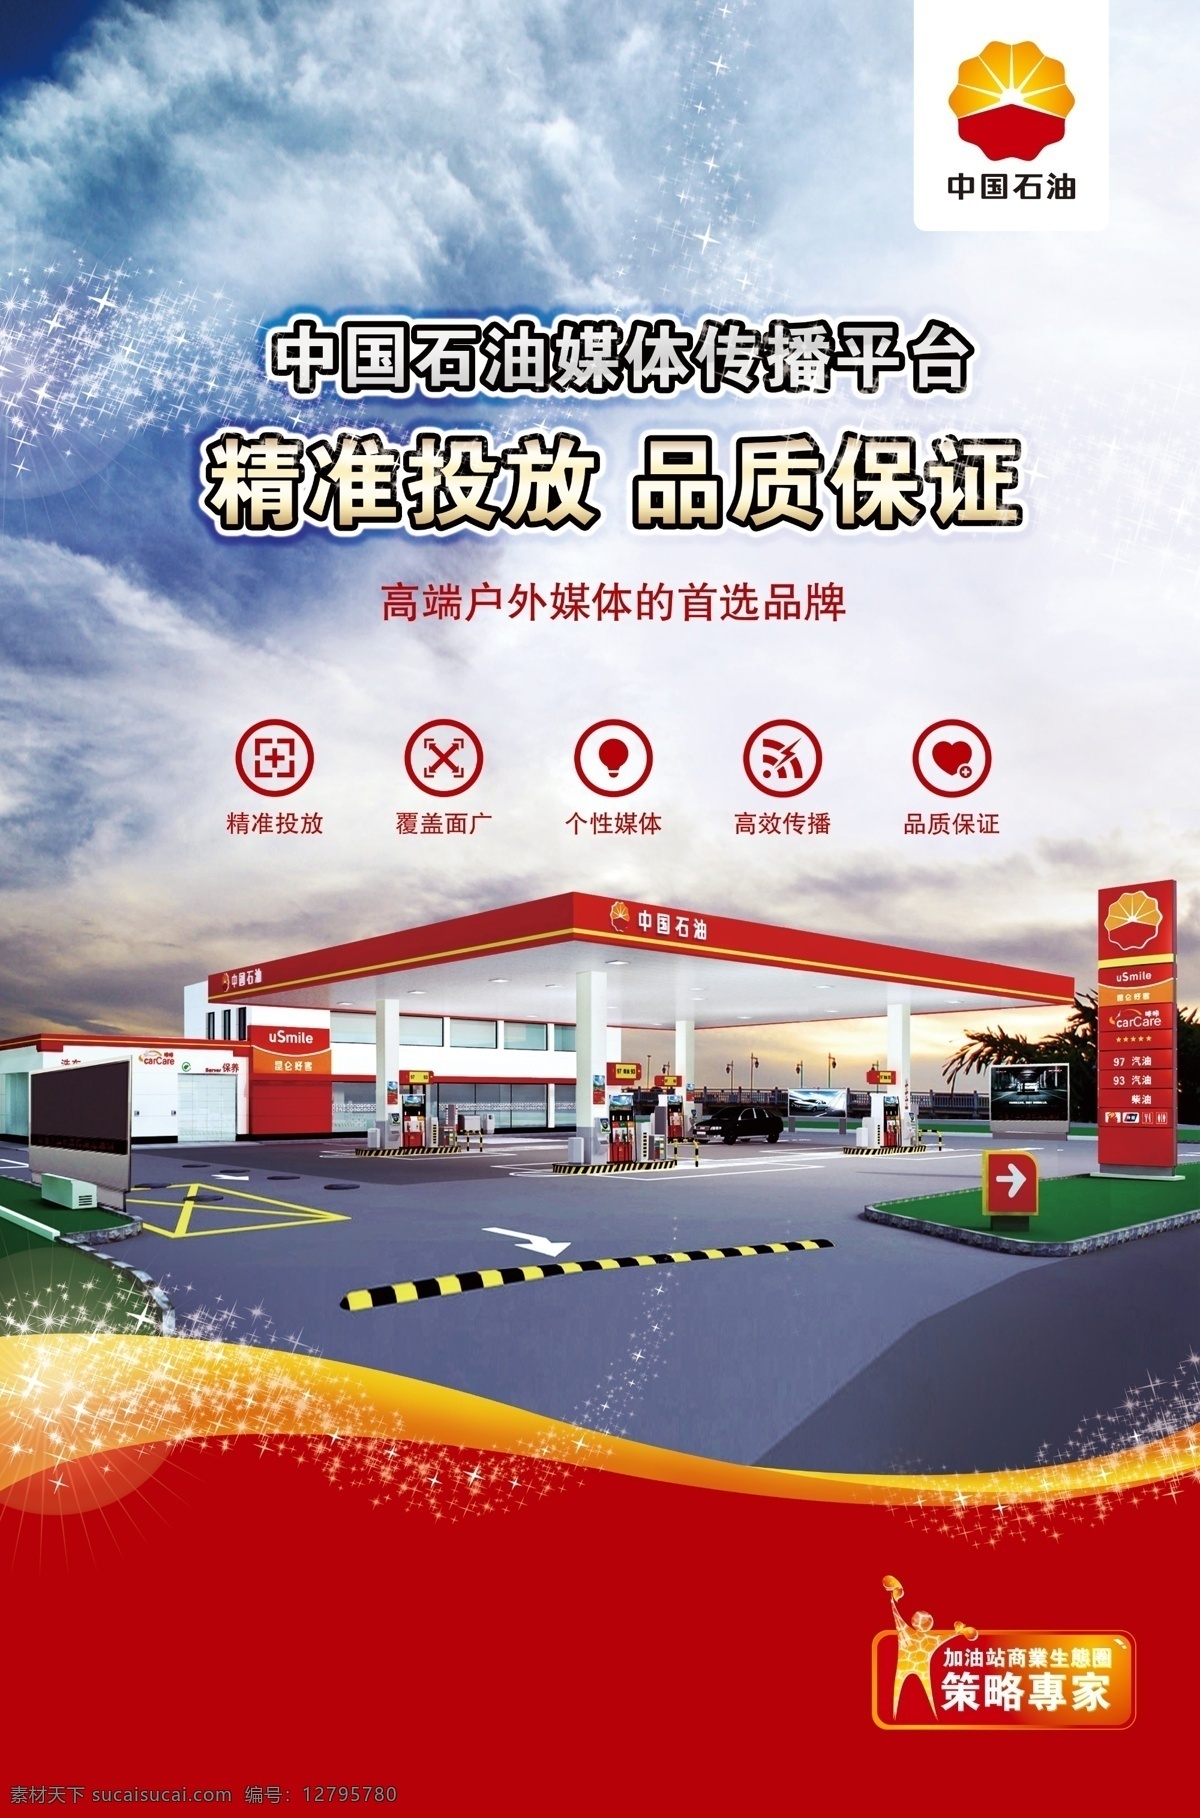 中国石油海报 展架 写真图片 中国石油 优惠 活动 海报 宣传单页